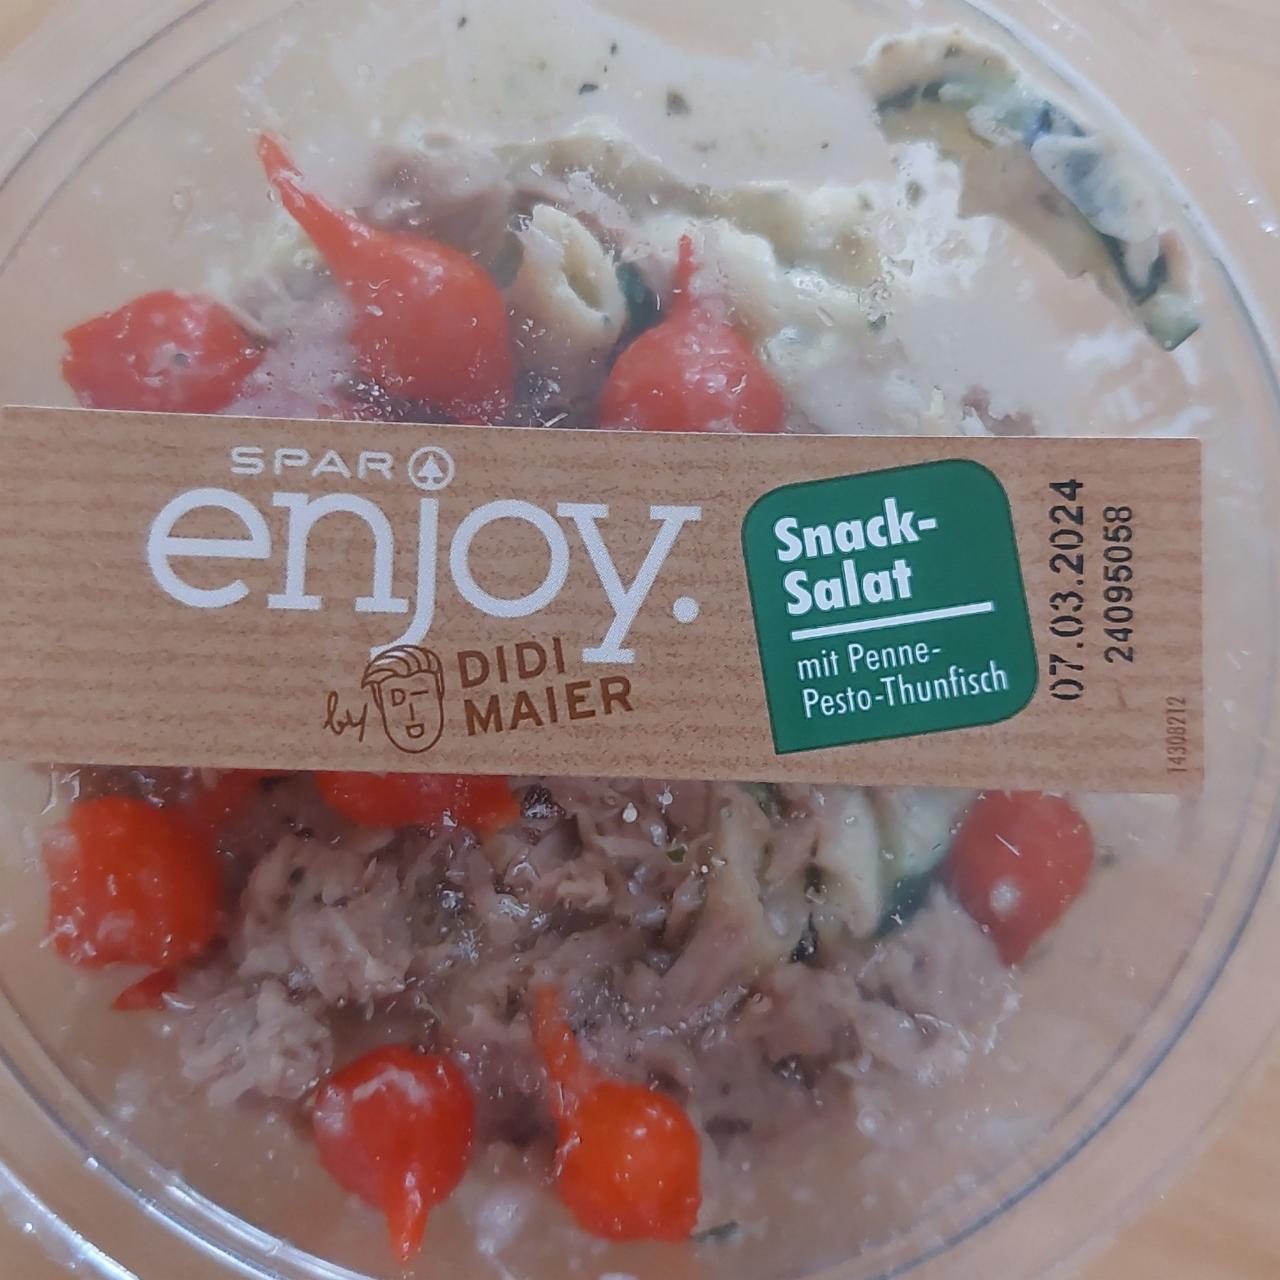 Fotografie - Snack-Salat mit Penne-Pesto-Thunfisch Spar Enjoy